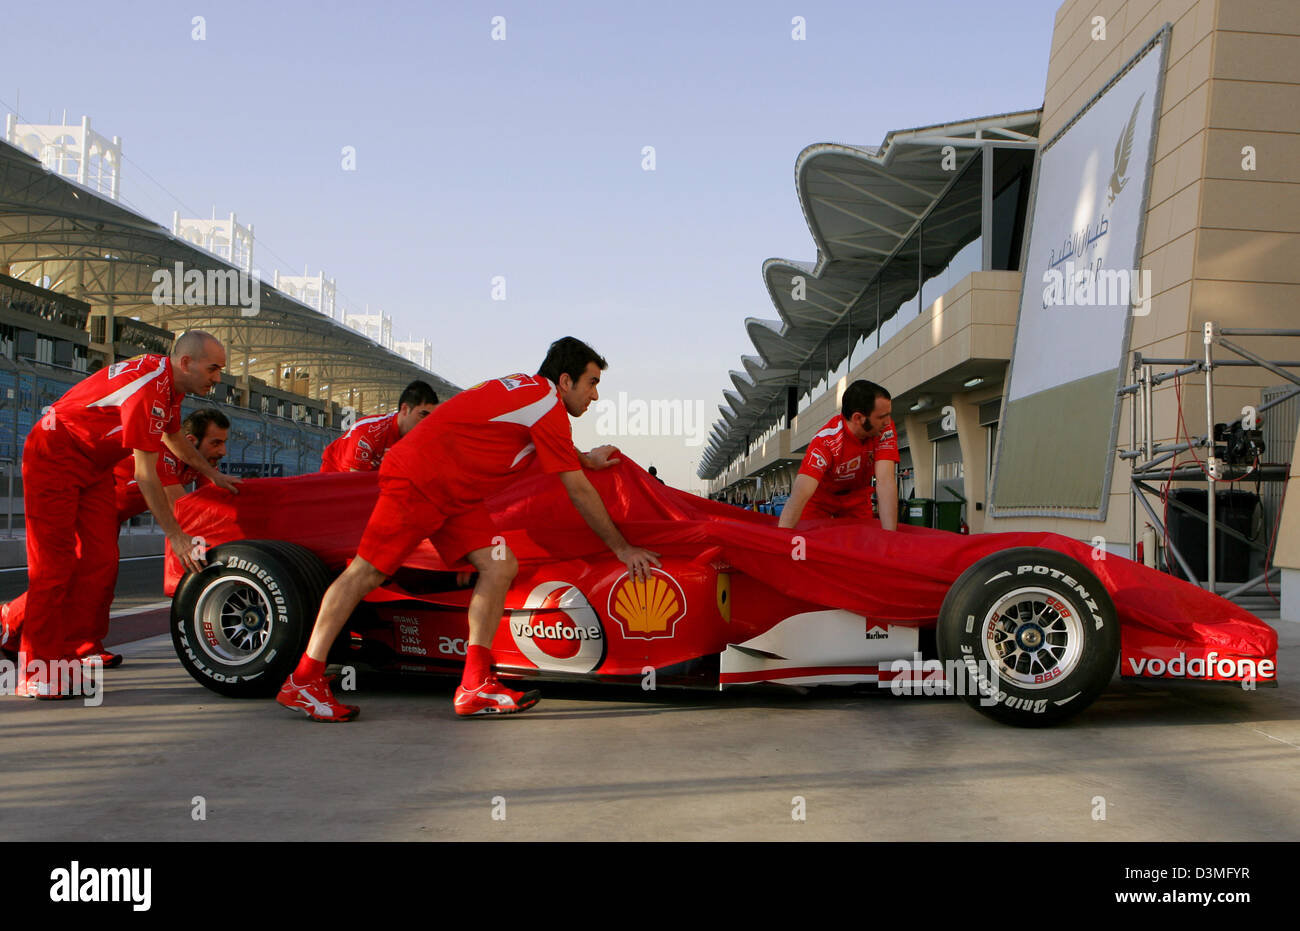 Mechanik der Ferrari drücken Sie ihr Auto in der Boxengasse an der Formel1 Rennstrecke in der Nähe von Manama, Bahrain, Mittwoch, 8. März 2006. Das erste Rennen der F1-Weltmeisterschaft 2006, der Grand Prix von Bahrain, wird hier auf Sonntag, 12. März 2006 stattfinden. Foto: Carmen Jaspersen Stockfoto